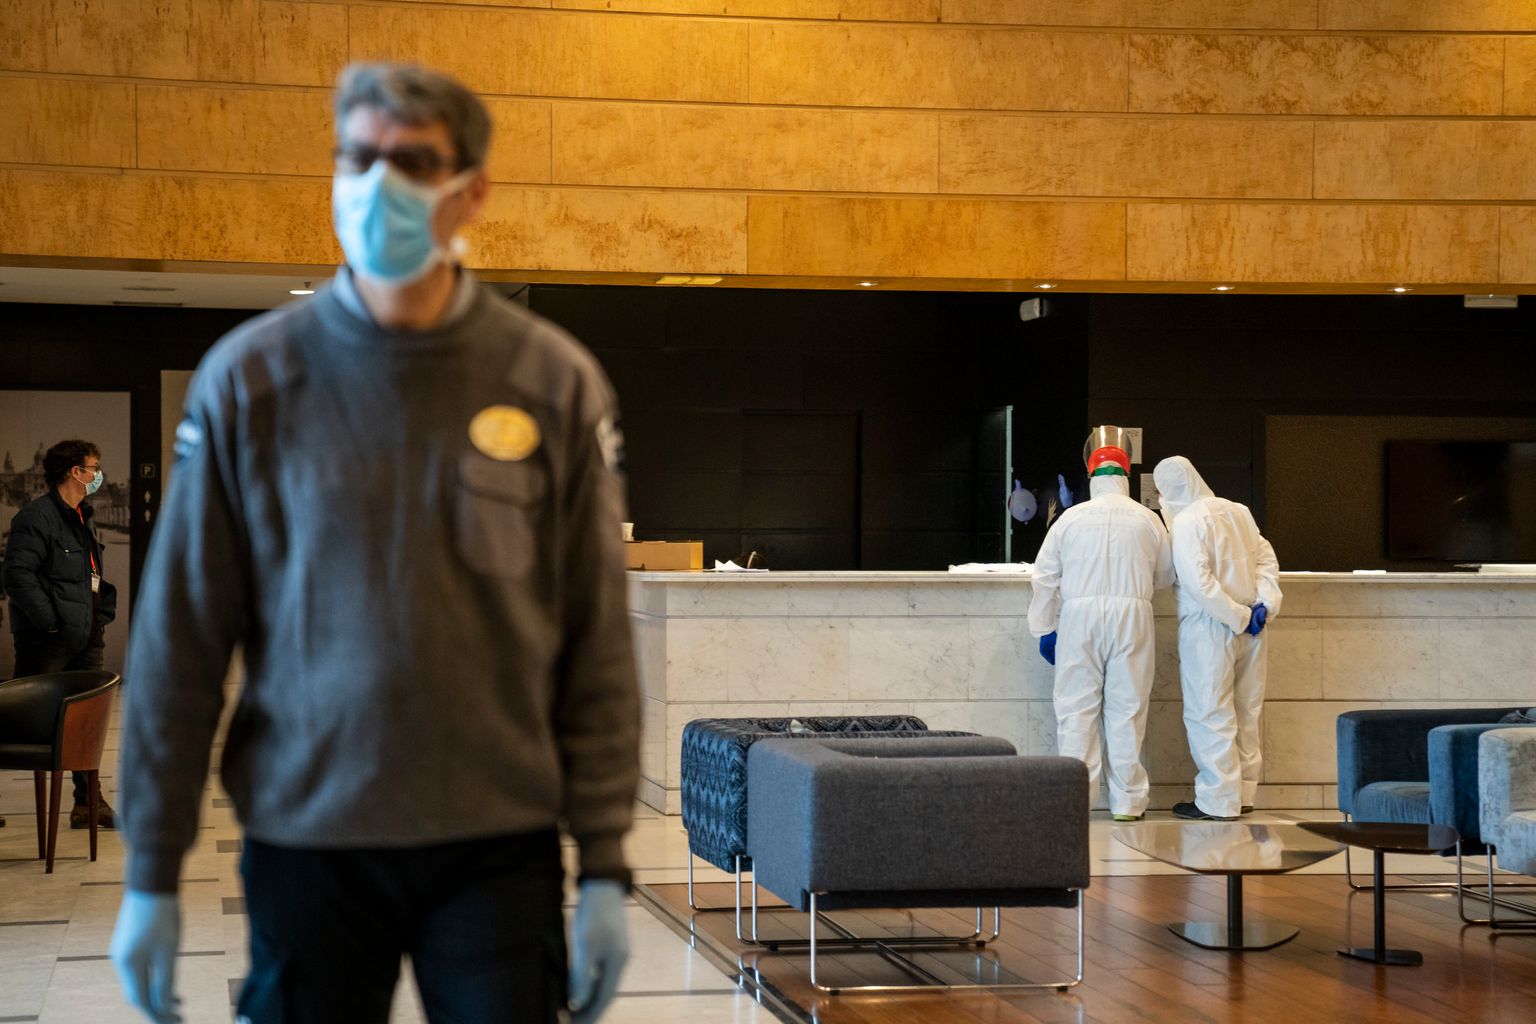 Personal de seguridad y sanitario en la recepción del Hotel Catalonia Plaza. El guardia de seguridad lleva guantes y mascarilla y los sanitarios llevan un mono impermeable, guantes y mascarilla